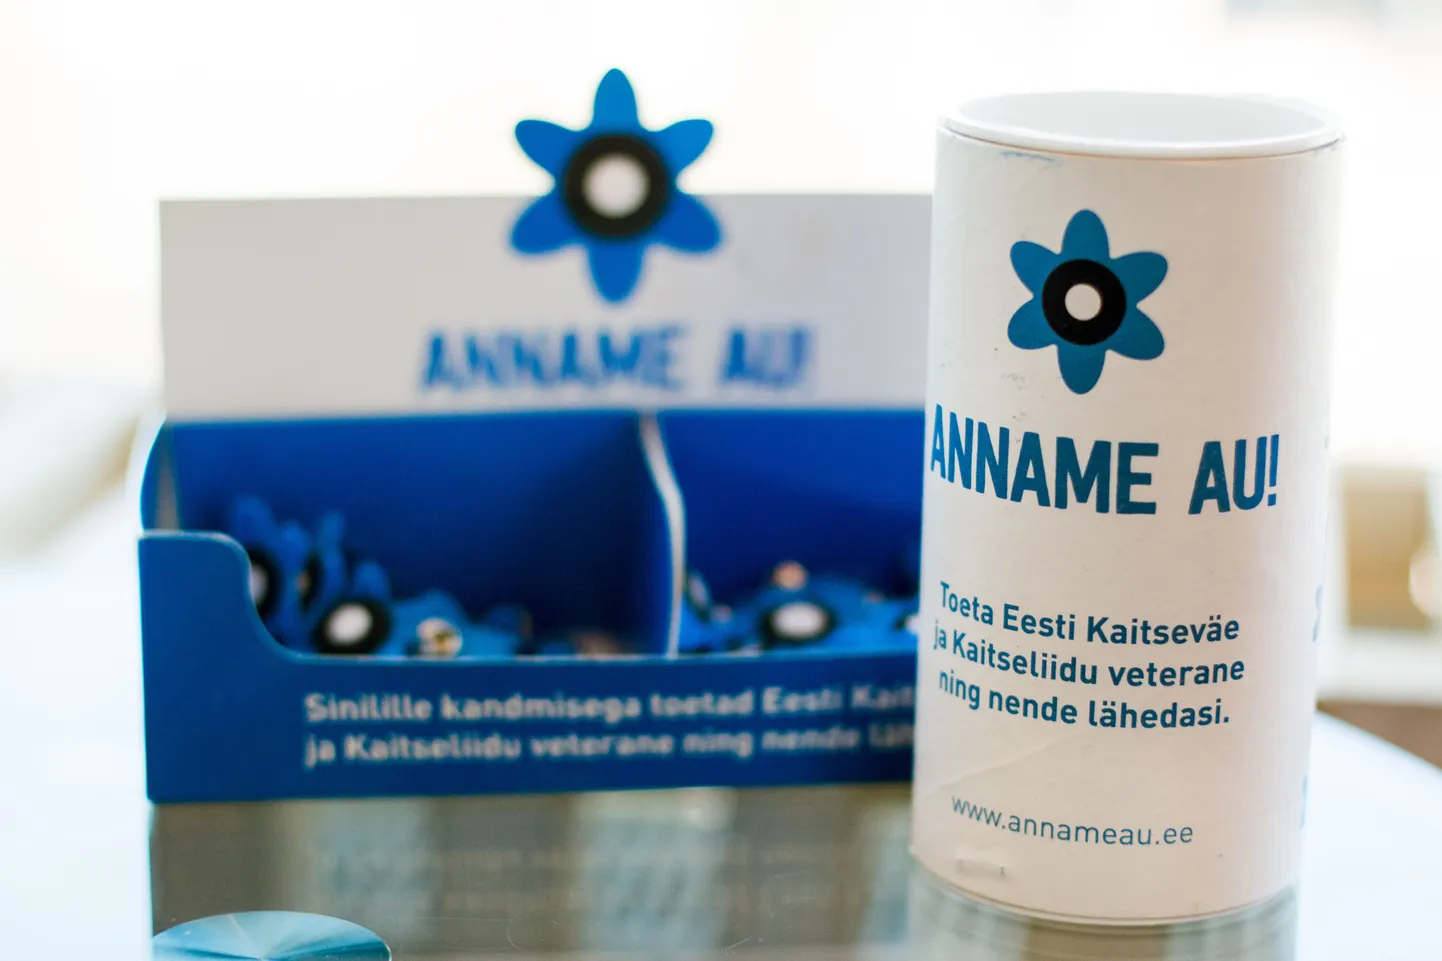 Sinilillekampaania eesmärgiks on sinilille kandmisega tunnustada Eesti Kaitseväe ja Kaitseliidu veterane.